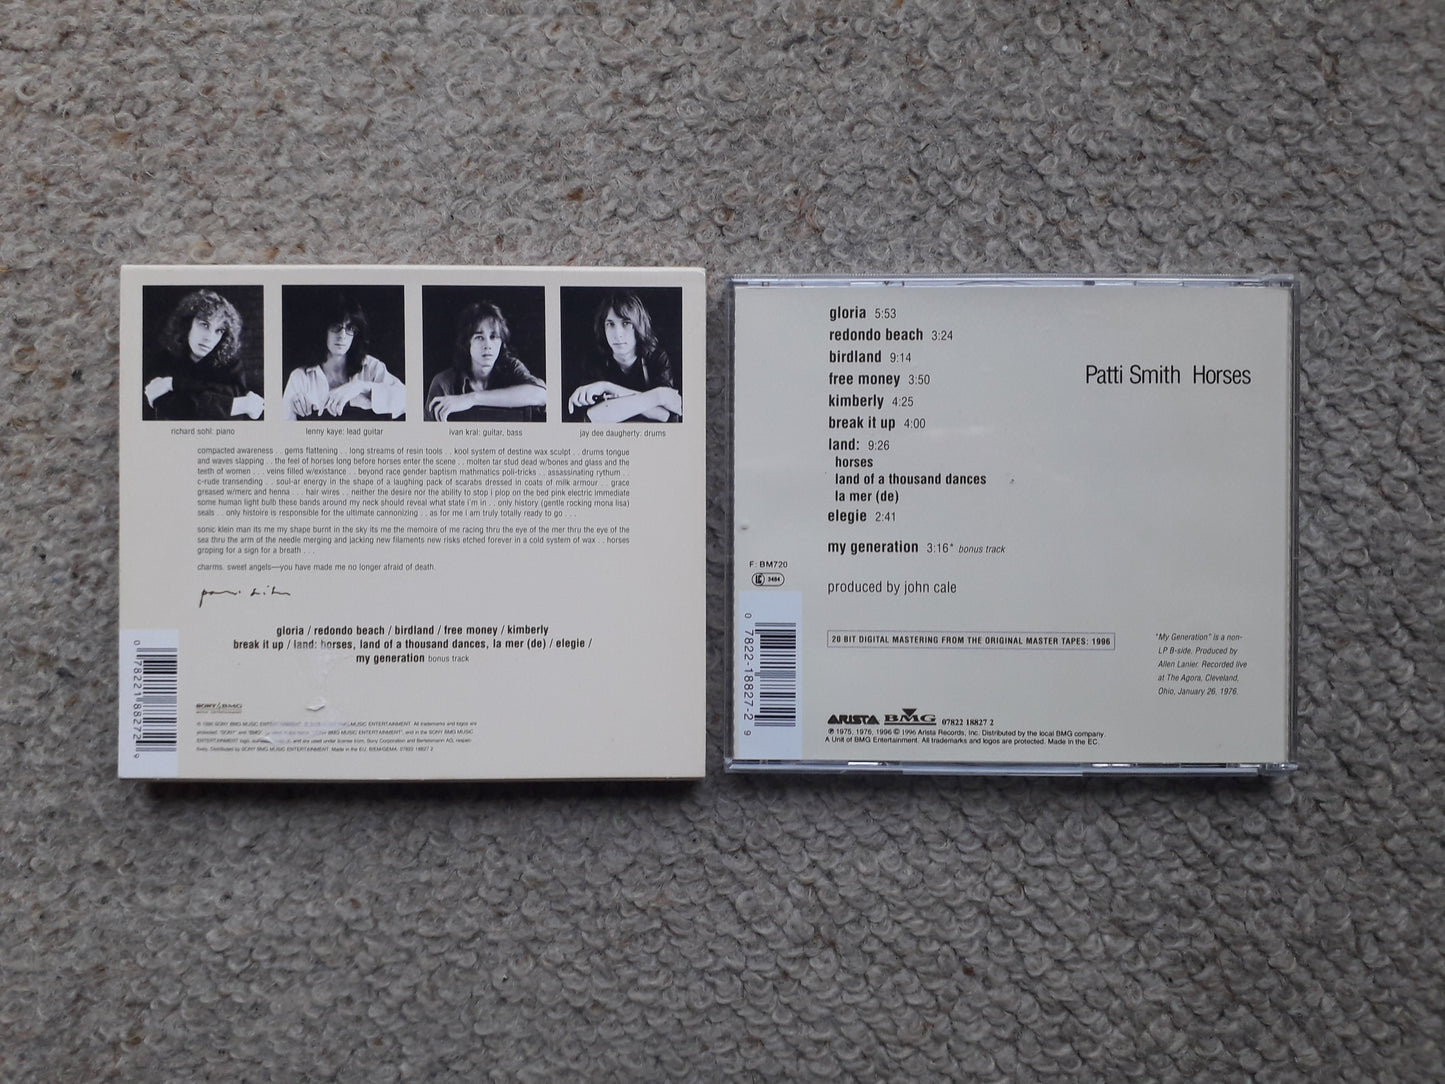 Patti Smith-Horses Remastered CD (07822 18827 2) Extra Track